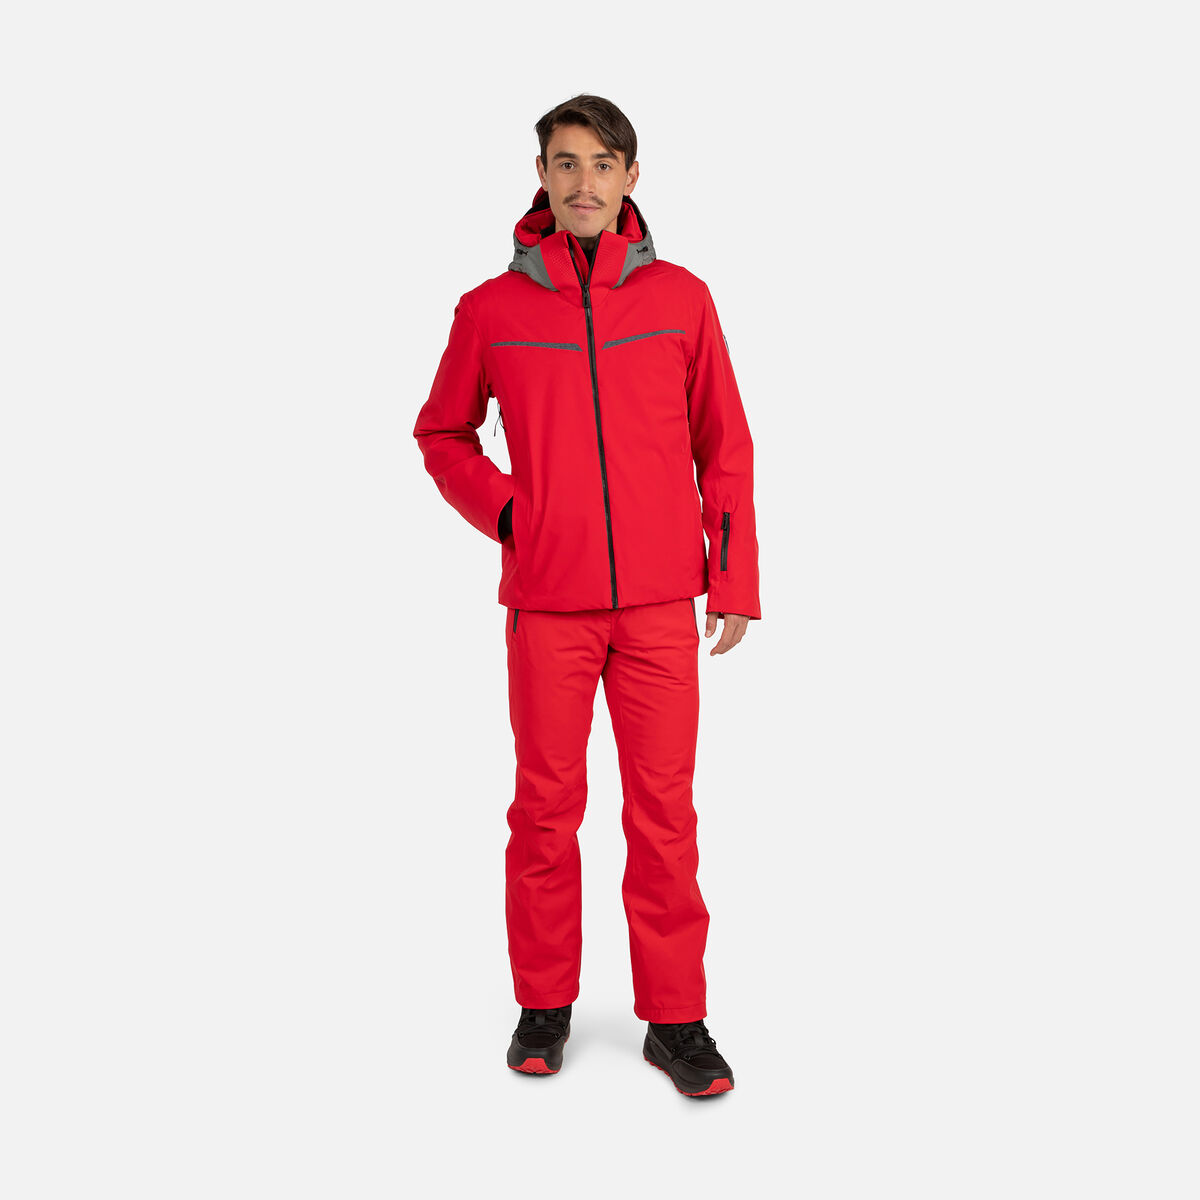 Rossignol Men's Strato STR Ski Jacket Red